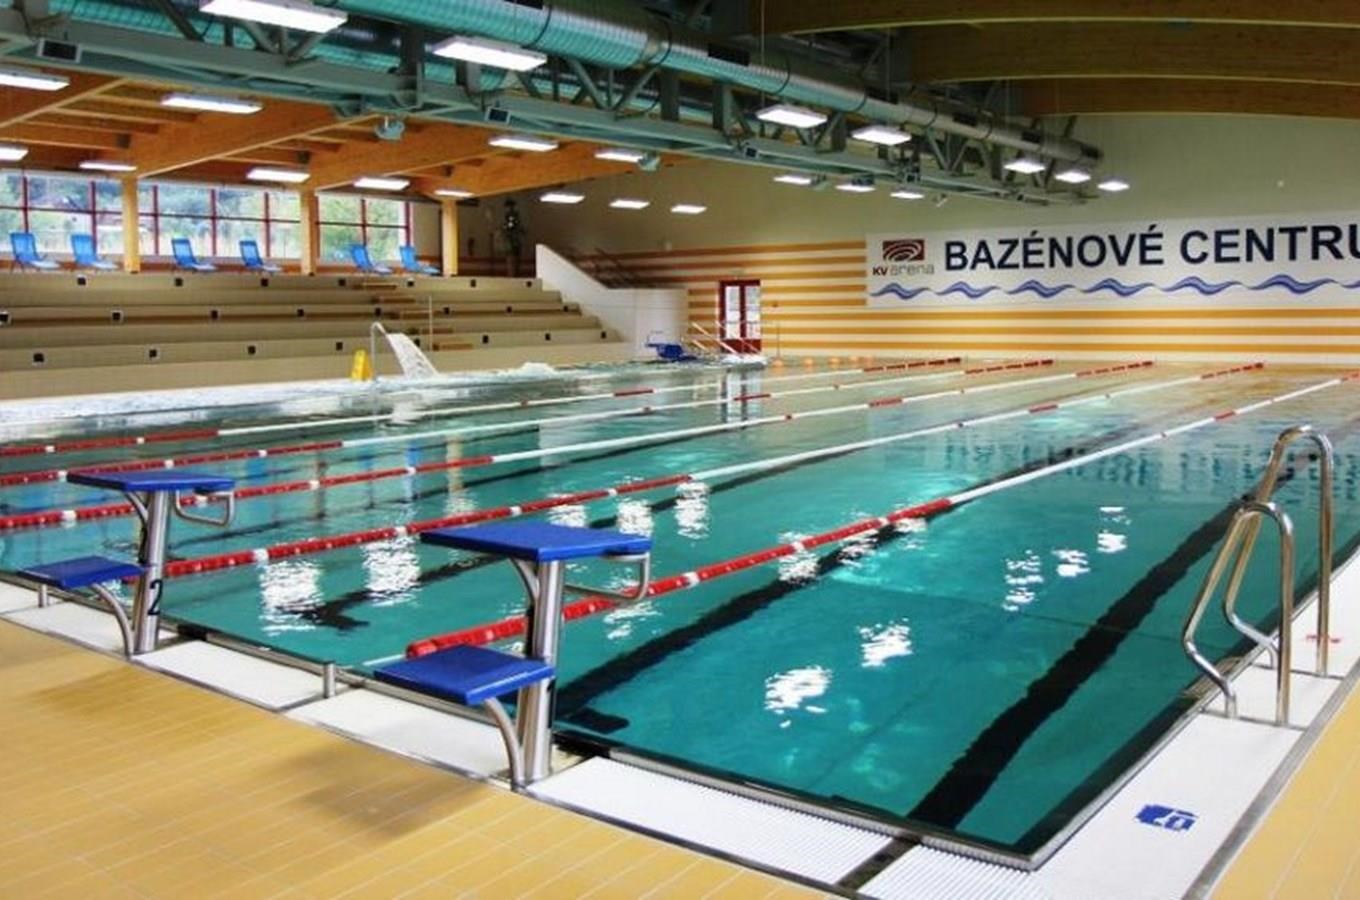 Bazénové centrum v KV Areně v Karlových Varech